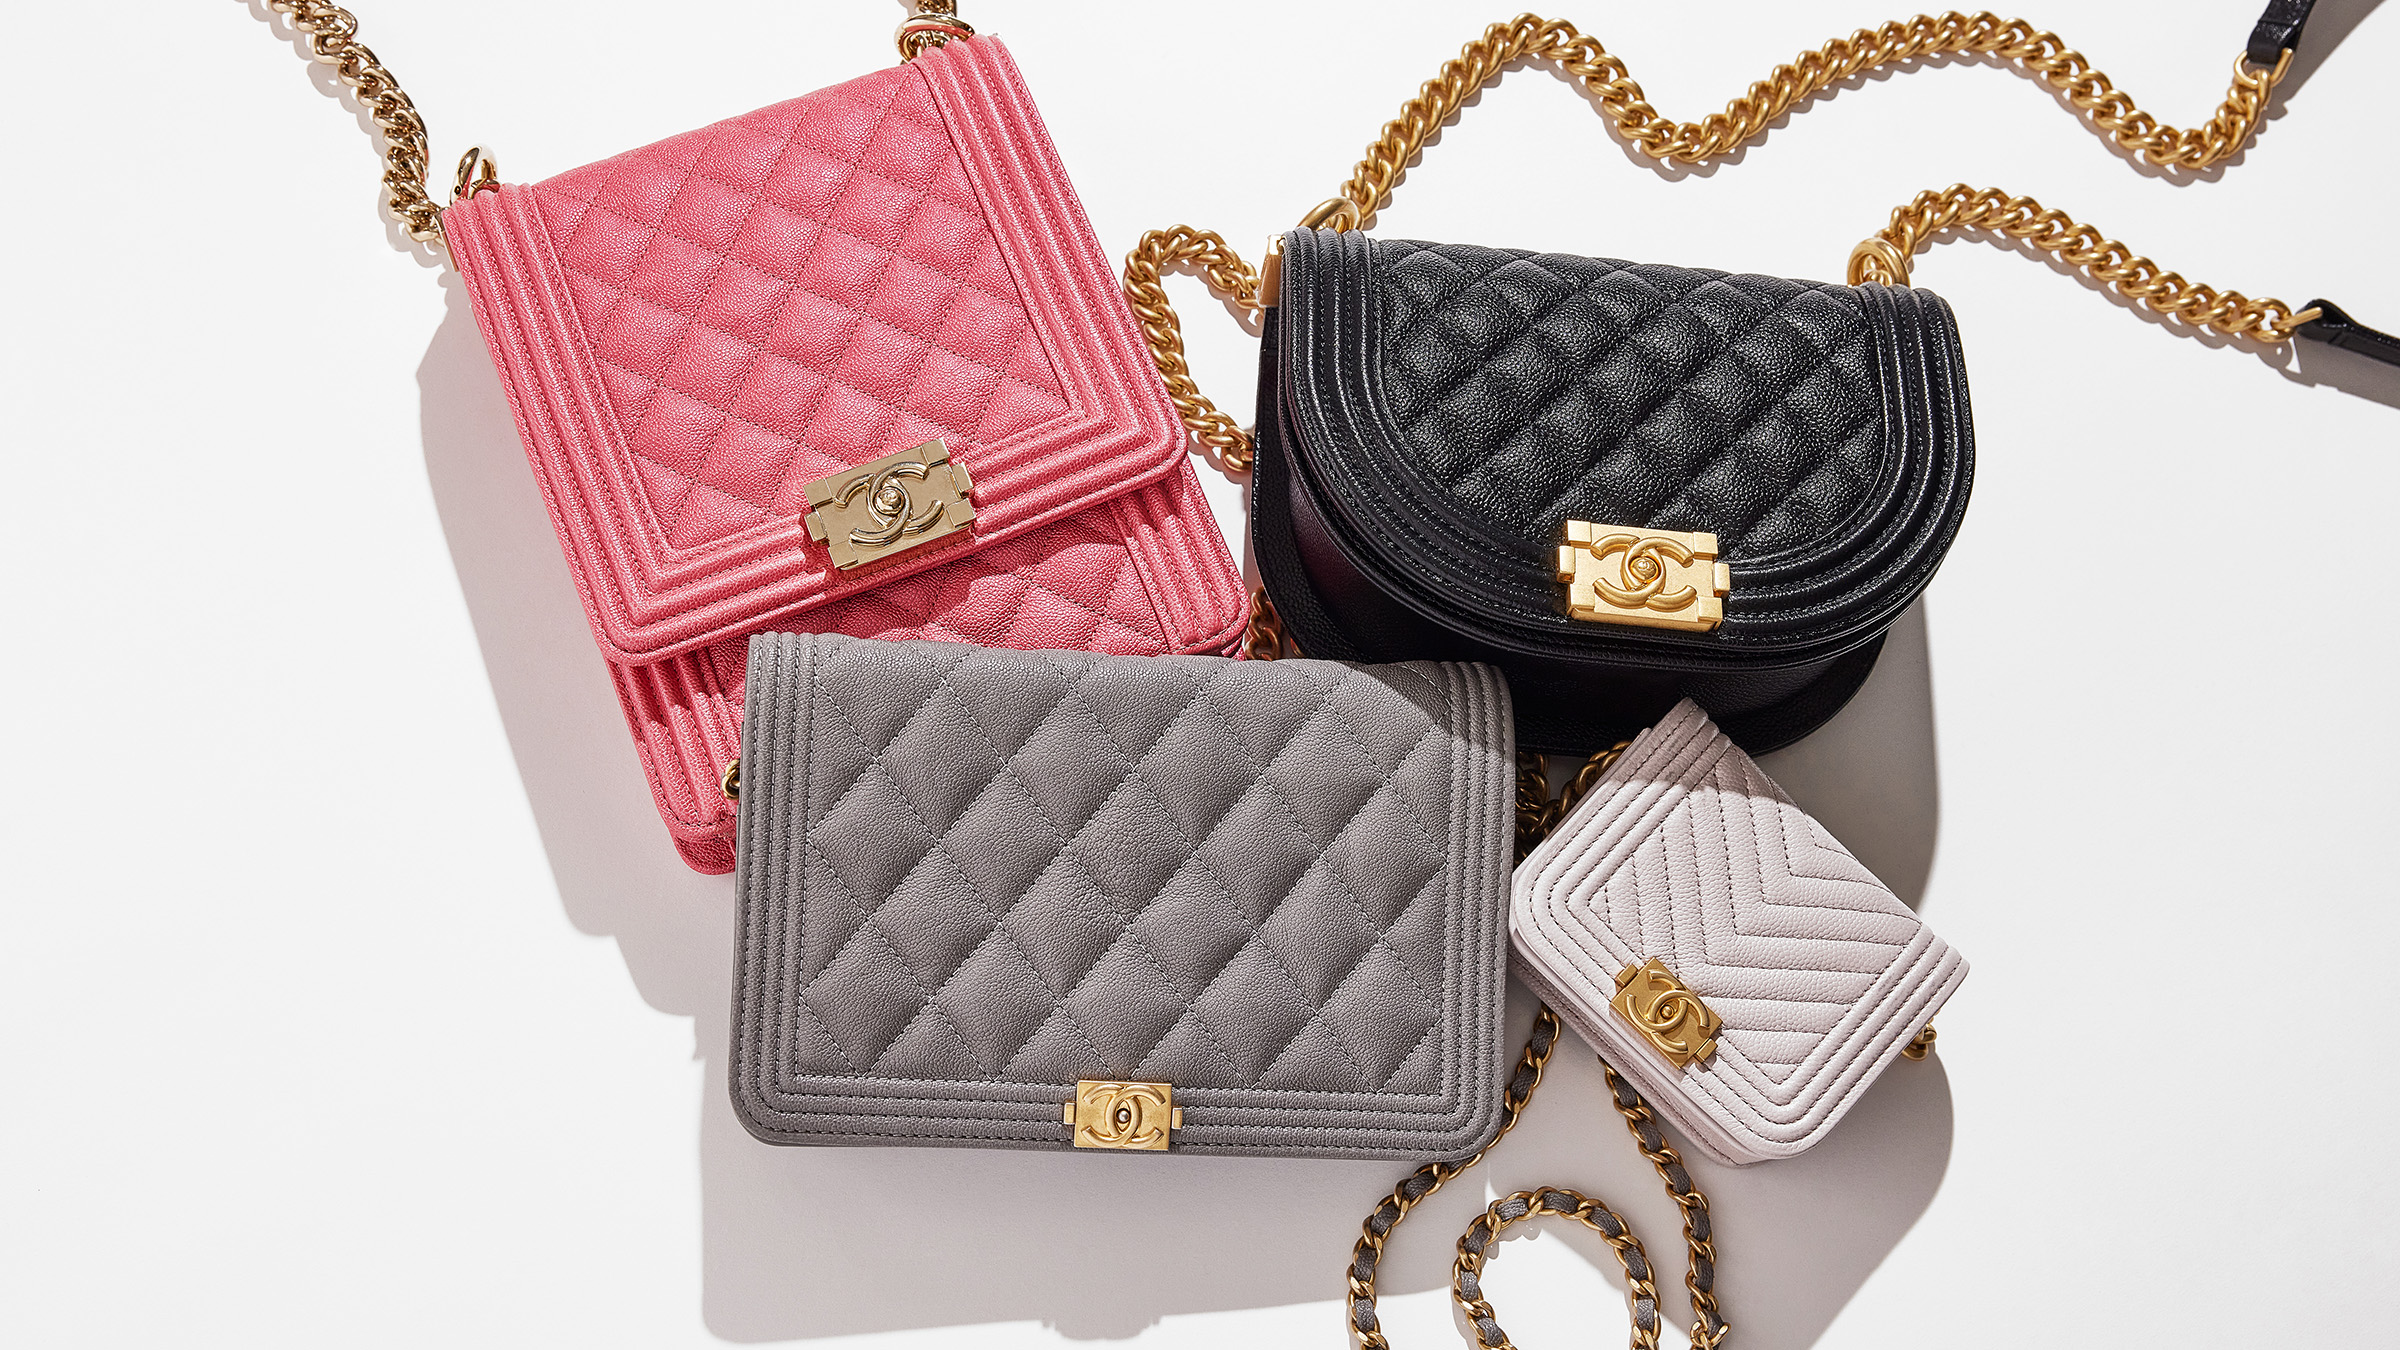 Sydney's Fashion Diary: How I store my Chanel handbags